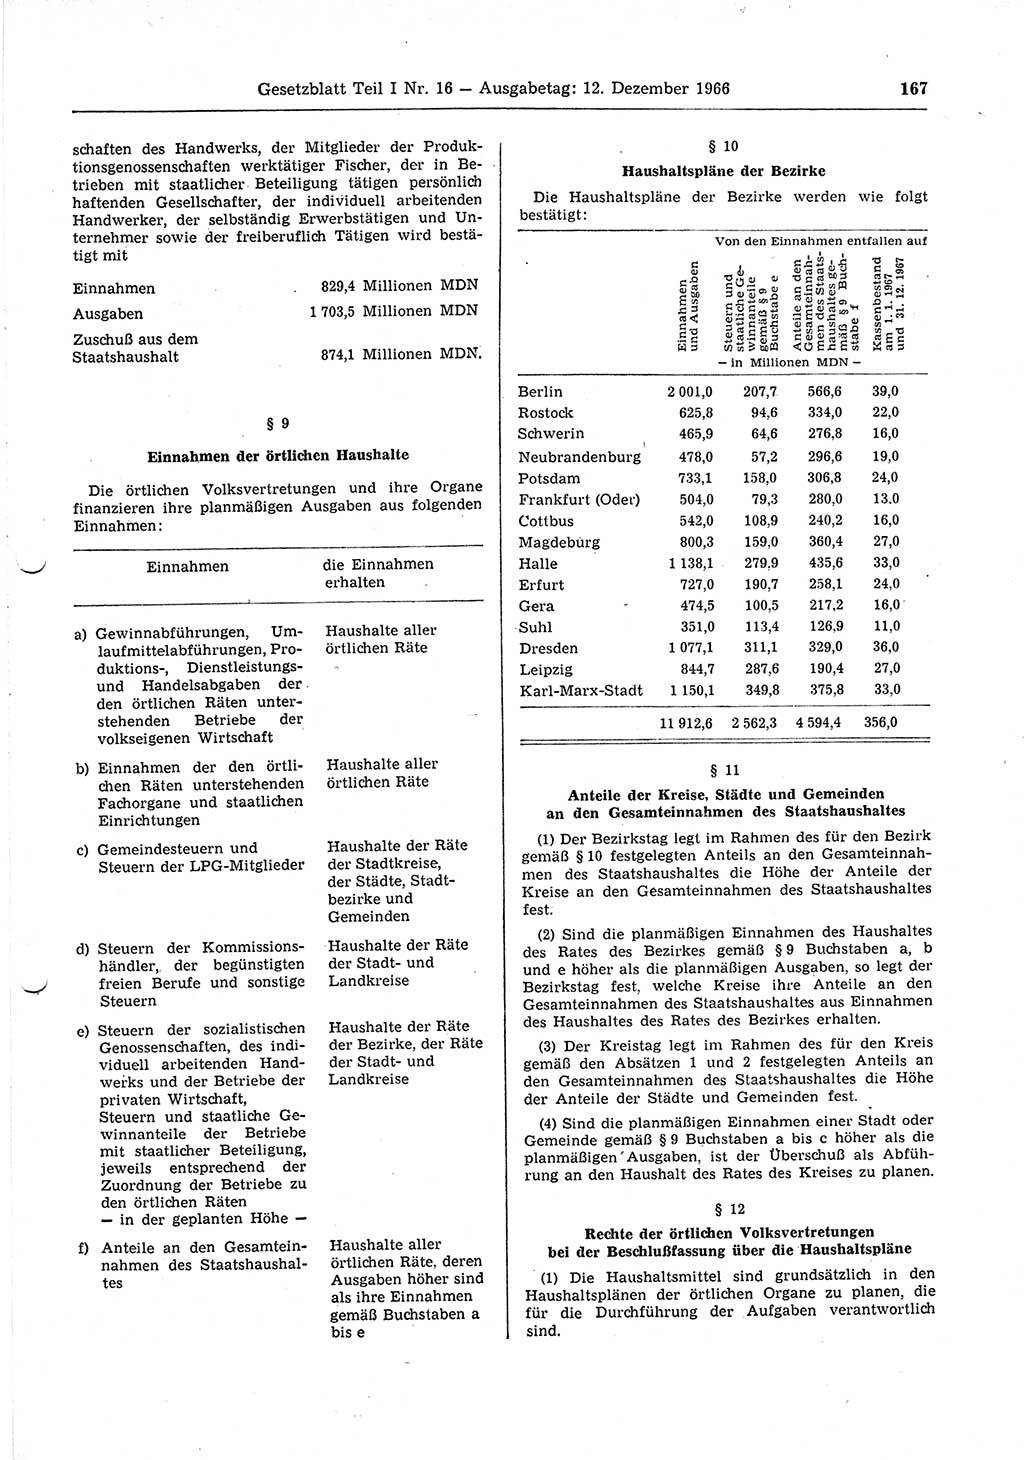 Gesetzblatt (GBl.) der Deutschen Demokratischen Republik (DDR) Teil Ⅰ 1966, Seite 167 (GBl. DDR Ⅰ 1966, S. 167)